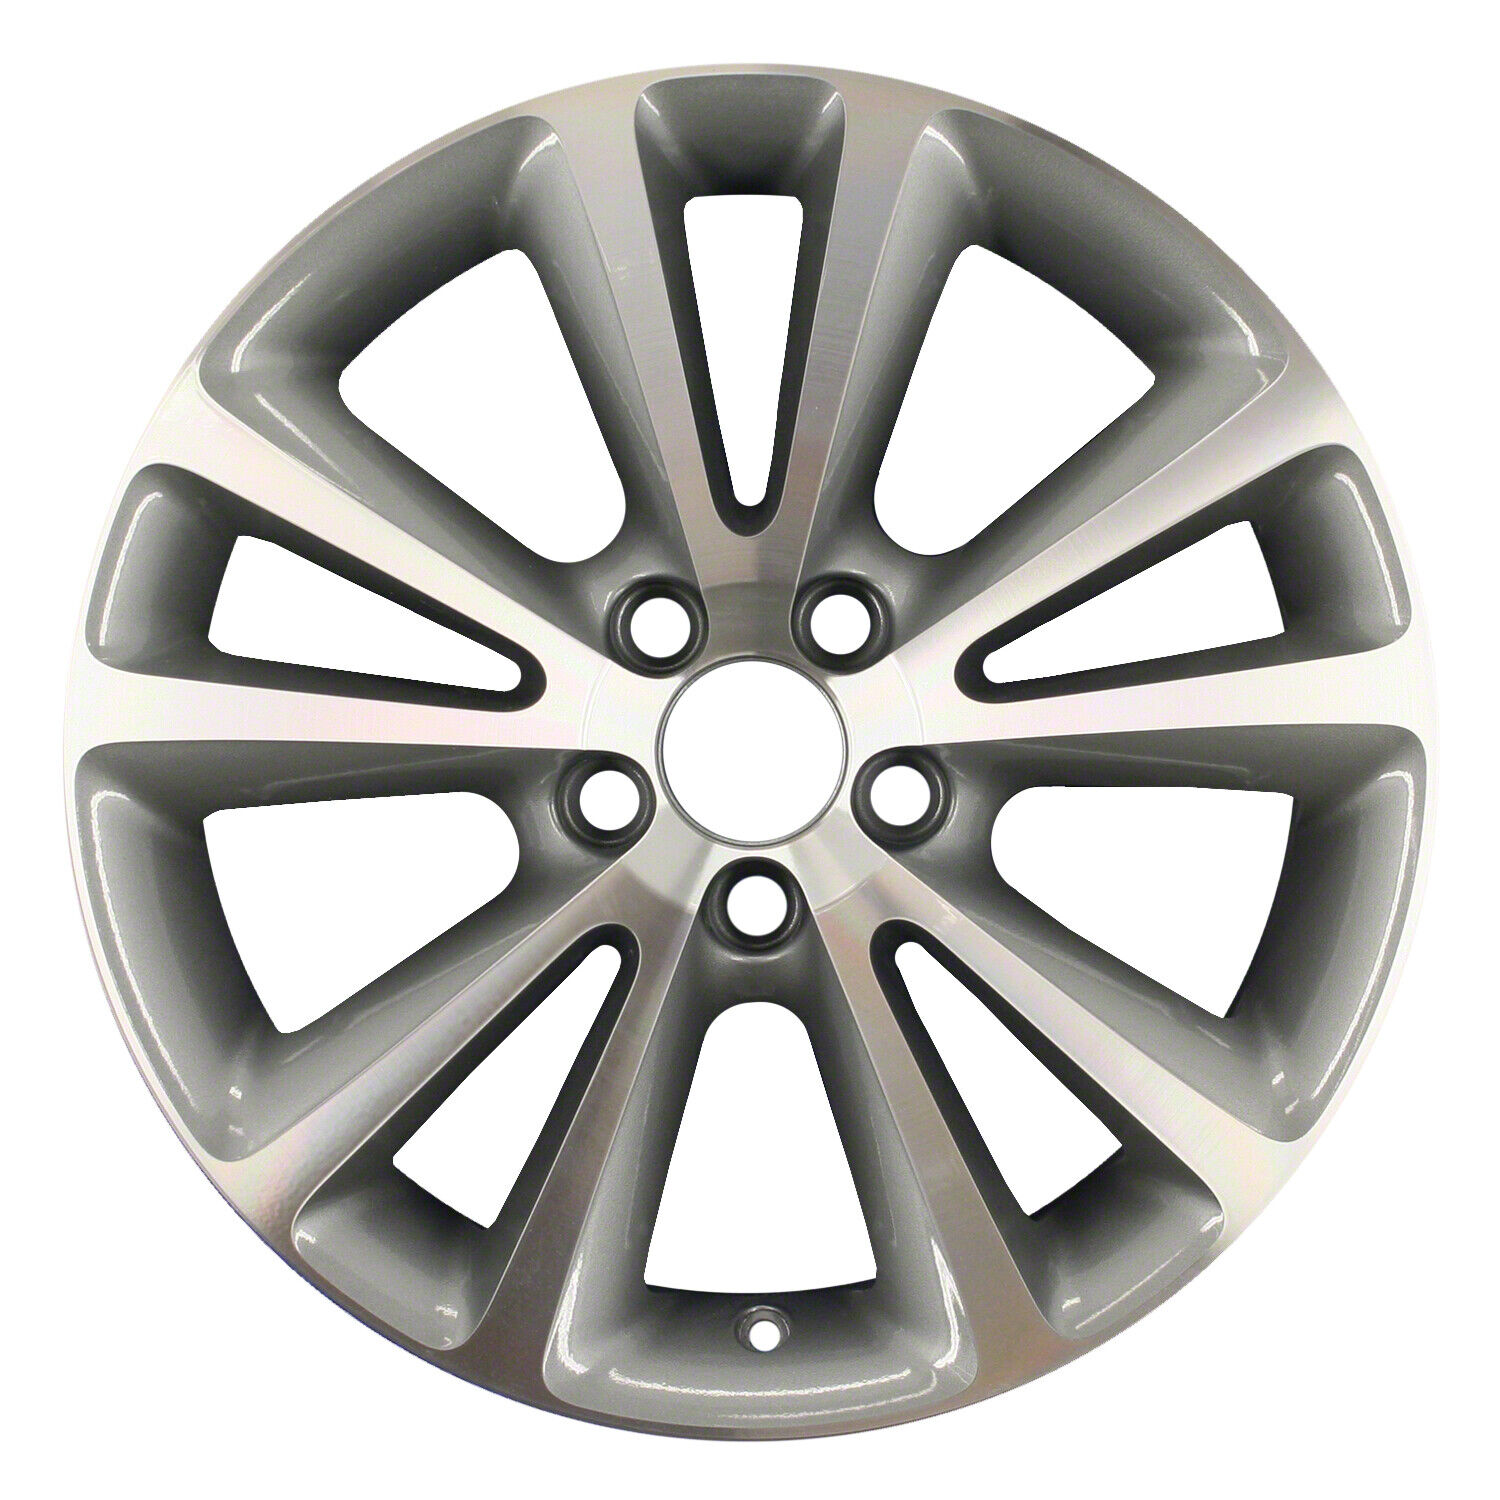 70375 Reconditioned OEM Aluminum Wheel 17x7.5 fits 2010-2013 Volvo C70